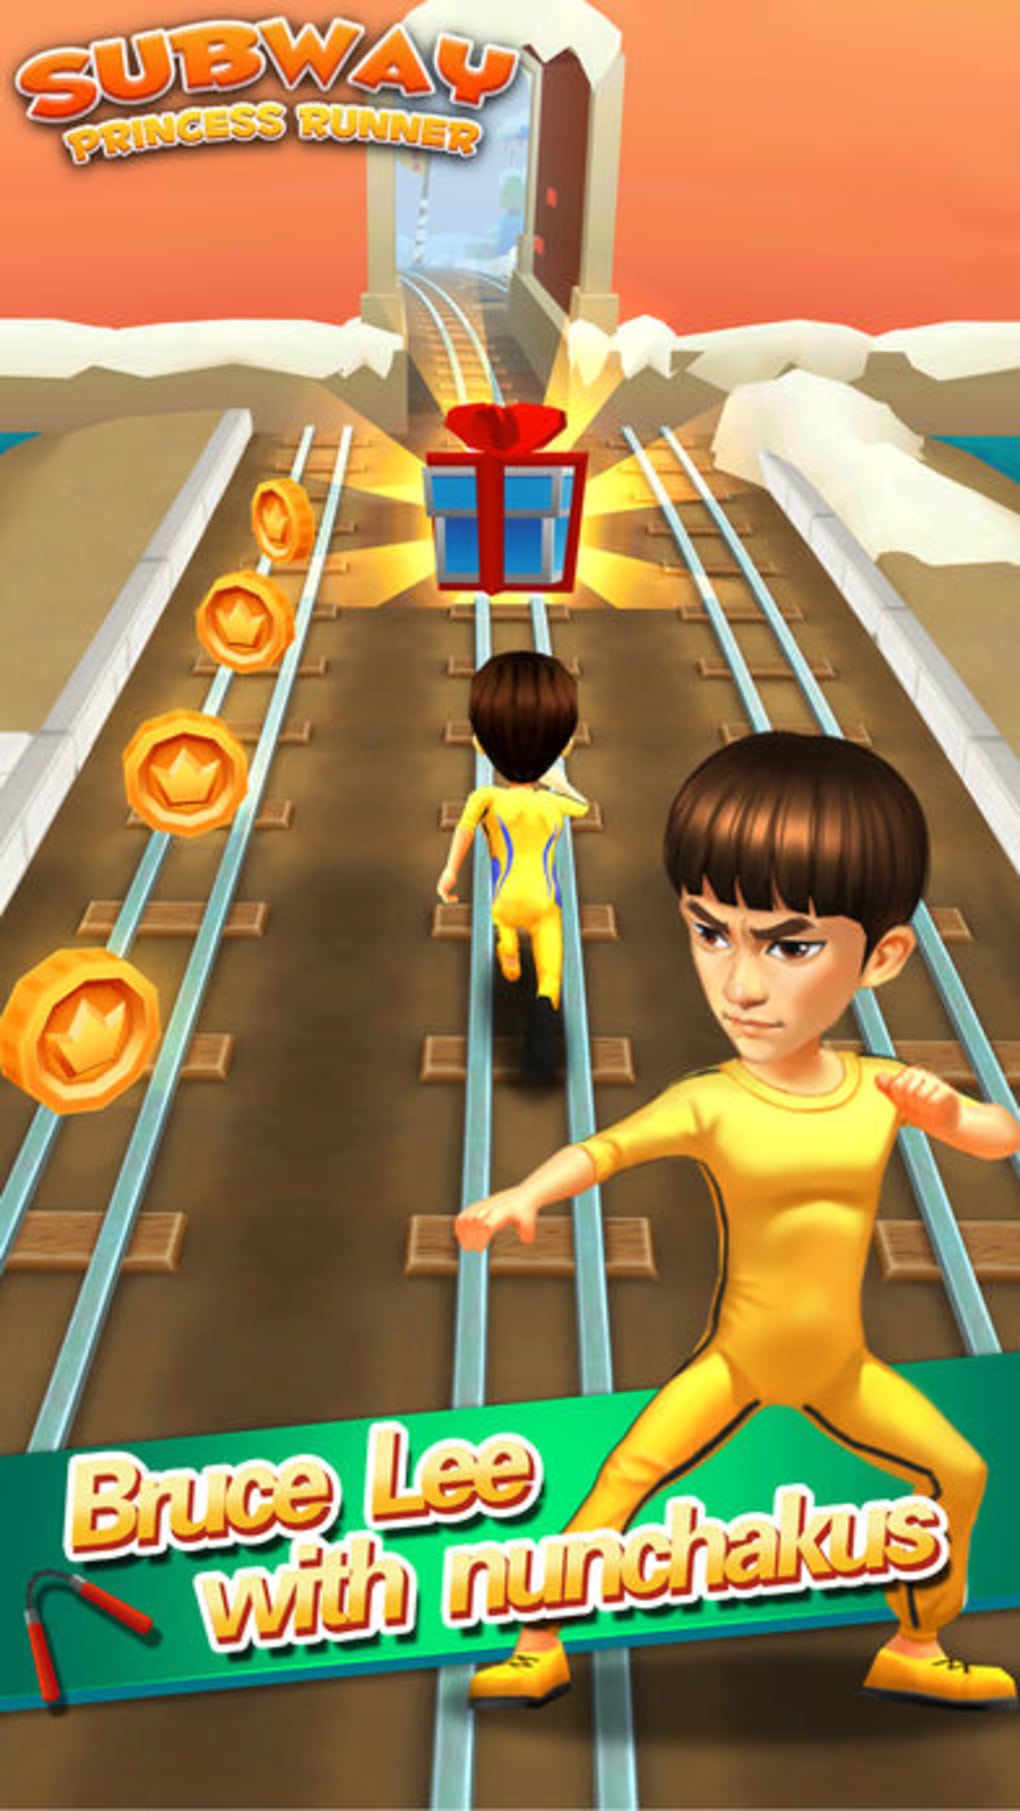 subway princess runner game app download